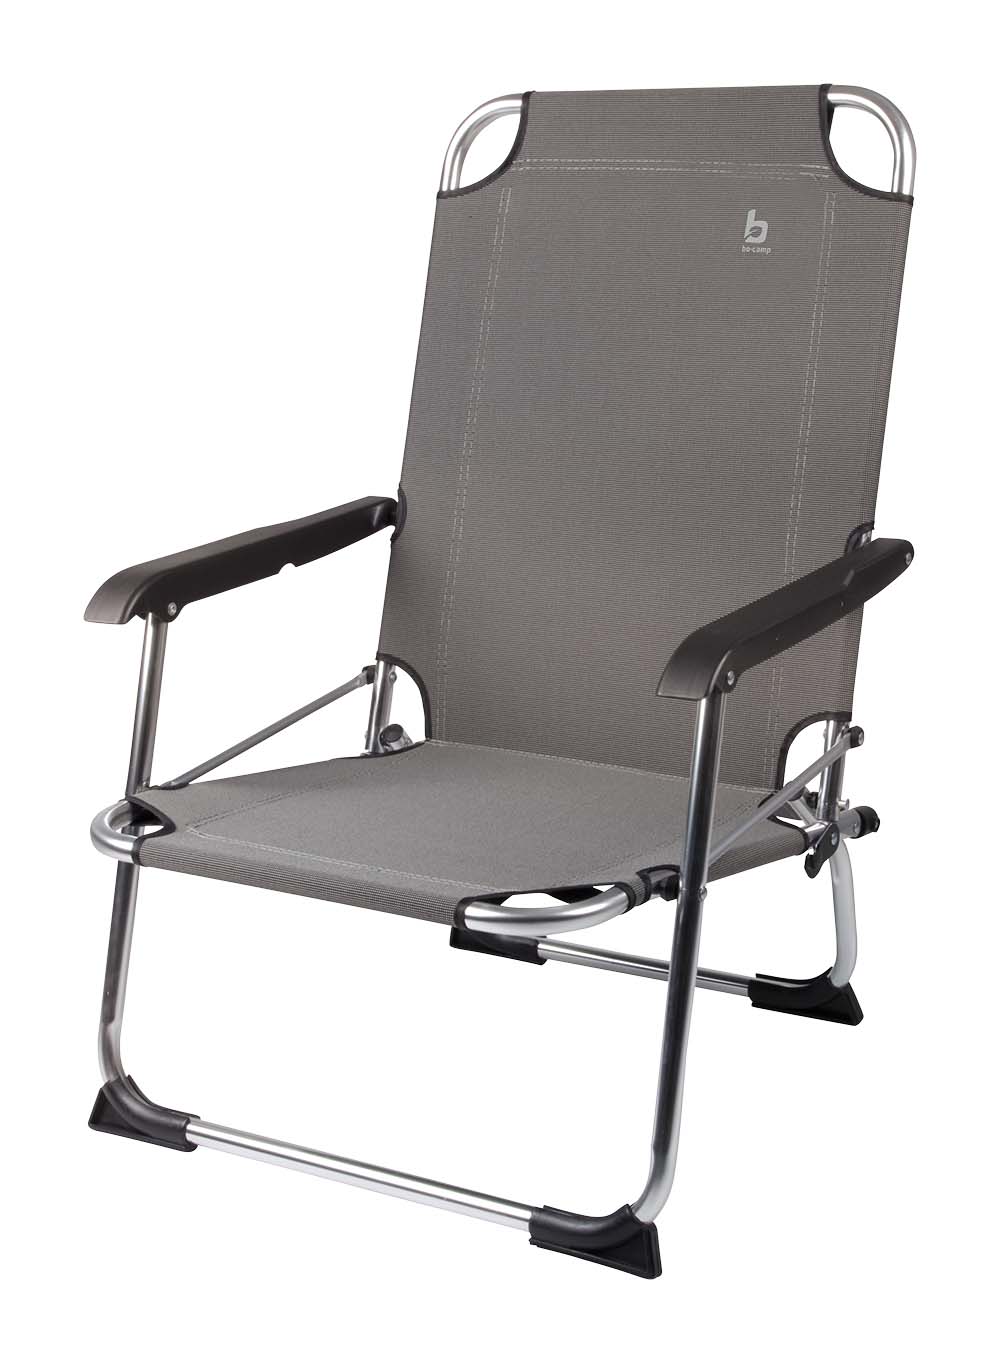 1204763 "Een zeer compacte strandstoel. Een klapstoel waarbij stijl, comfort en functionaliteit worden gecombineerd. Voorzien van sterke en luxe 2-tone 600 denier polyester stof en een lichtgewicht aluminium frame. Daarnaast is deze stoel voorzien van extra stabilisatoren en een 'safety-lock' tegen ongewenst inklappen. Compact mee te nemen (ingeklapt lxbxh): 58x54x9,5 cm. Zithoogte: 25 cm. Zitdiepte: 41 cm. Zitbreedte: 44 cm. Ruglengte: 56 cm. Maximale belasting: 100 kilogram."